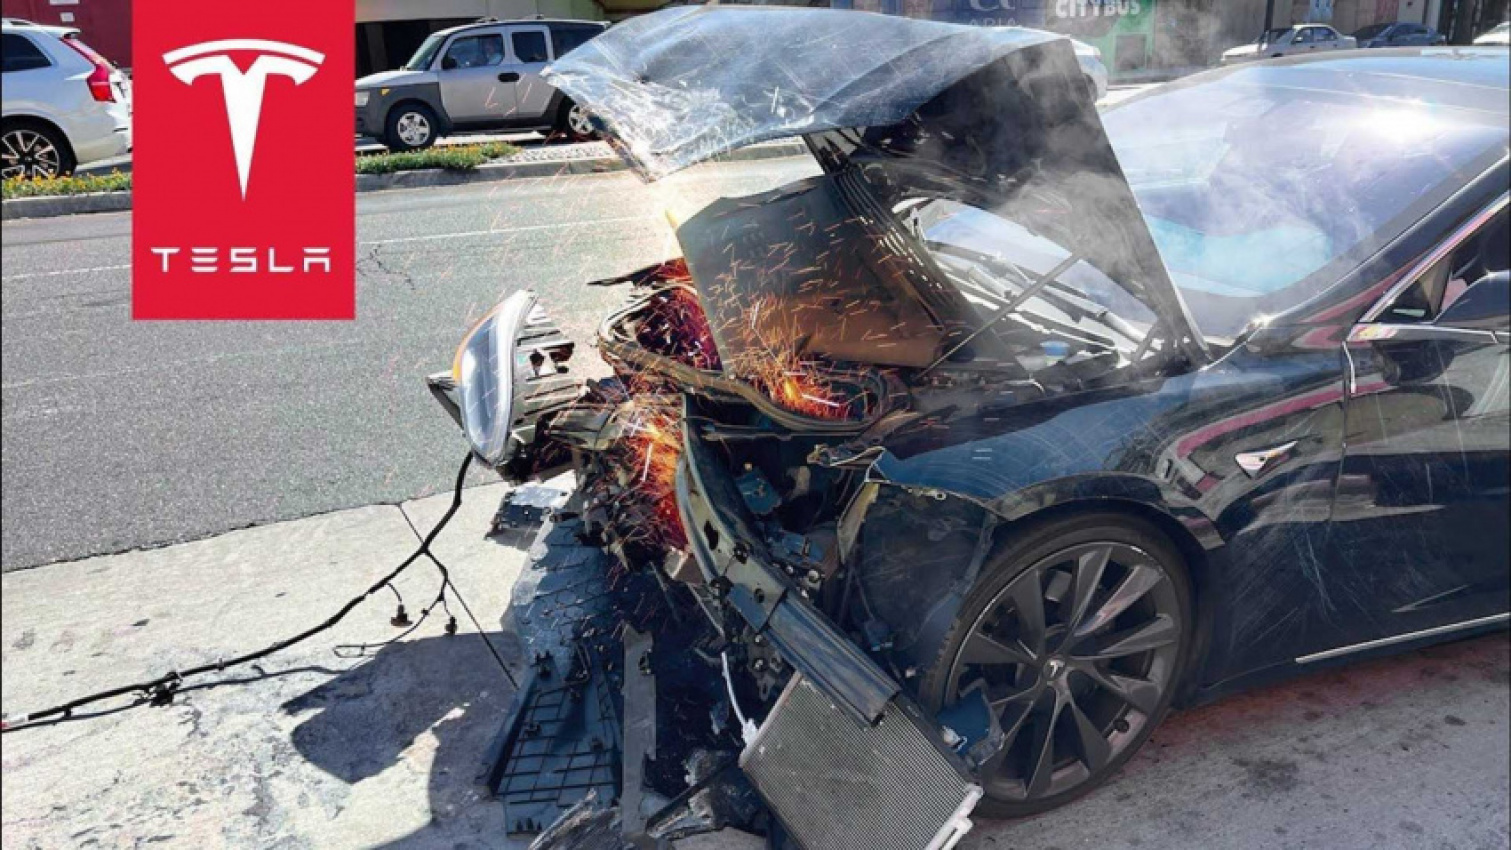 autos, cars, evs, tesla, tesla model s, $100k tesla model s totaled in crash: teslacam footage used as evidence